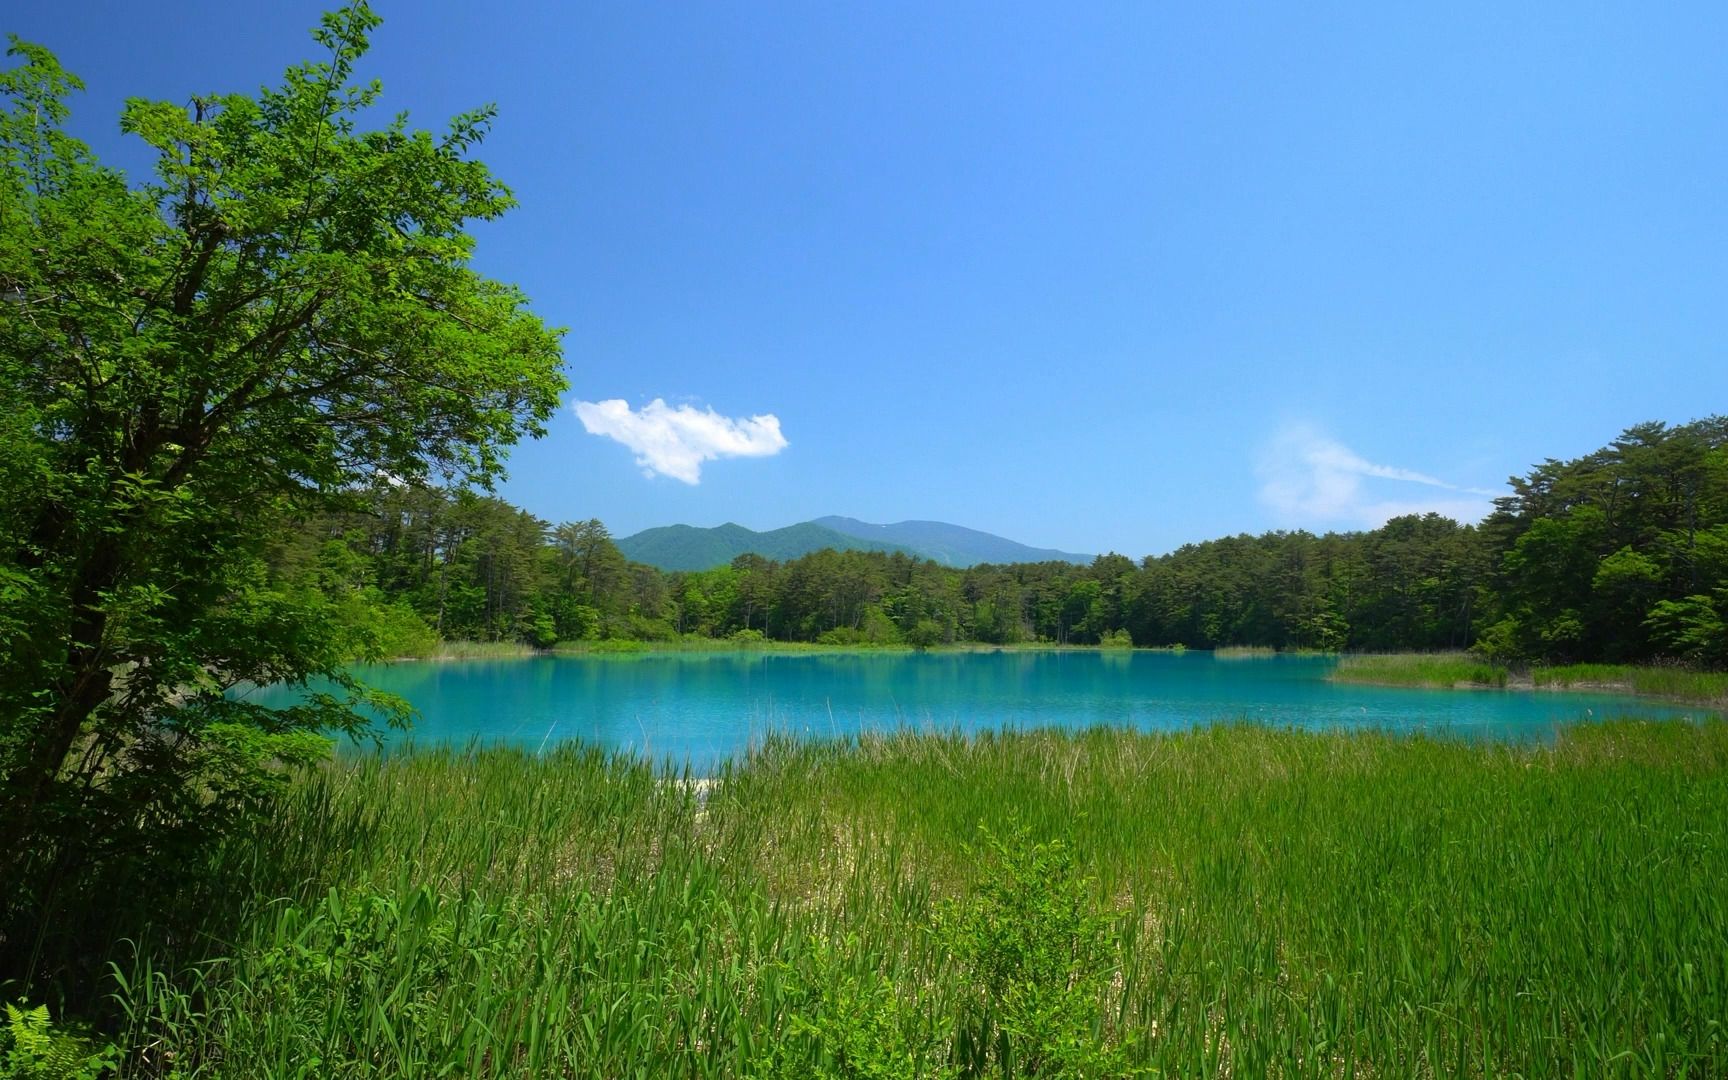 平静的湖面,温柔的春风,大自然的声音